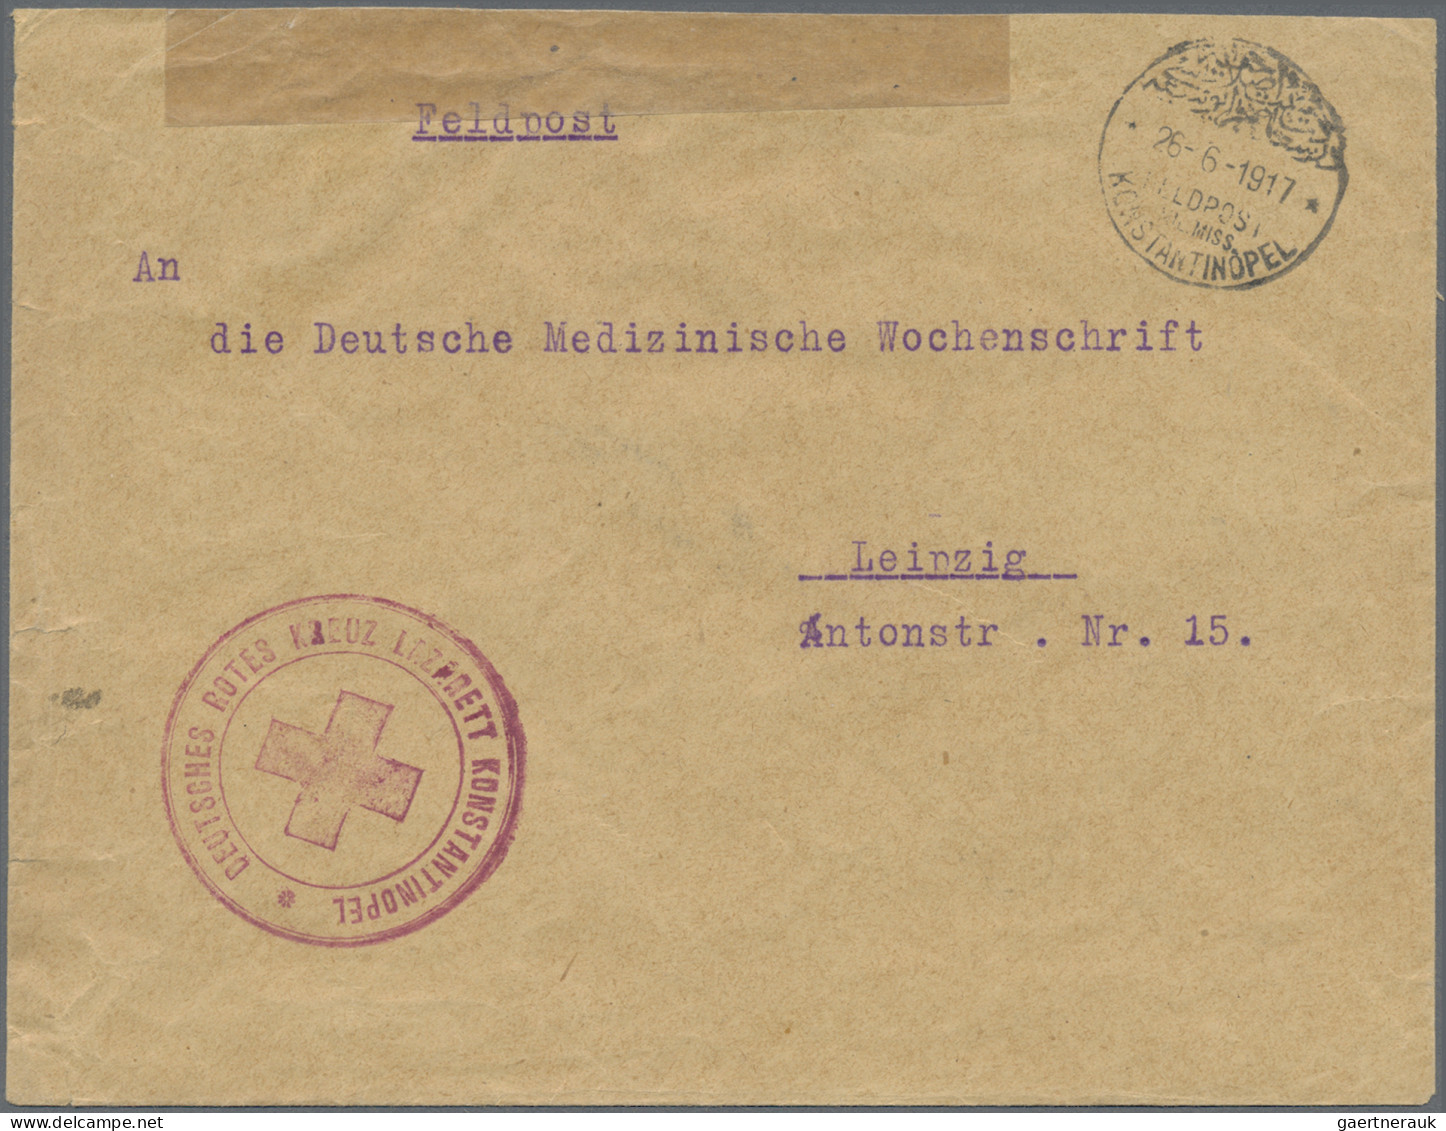 Militärmission: 1917/18, MIL.MISS.KONSTANTINOPEL Auf Zwei FP-Belegen Mit Roten B - Deutsche Post In Der Türkei